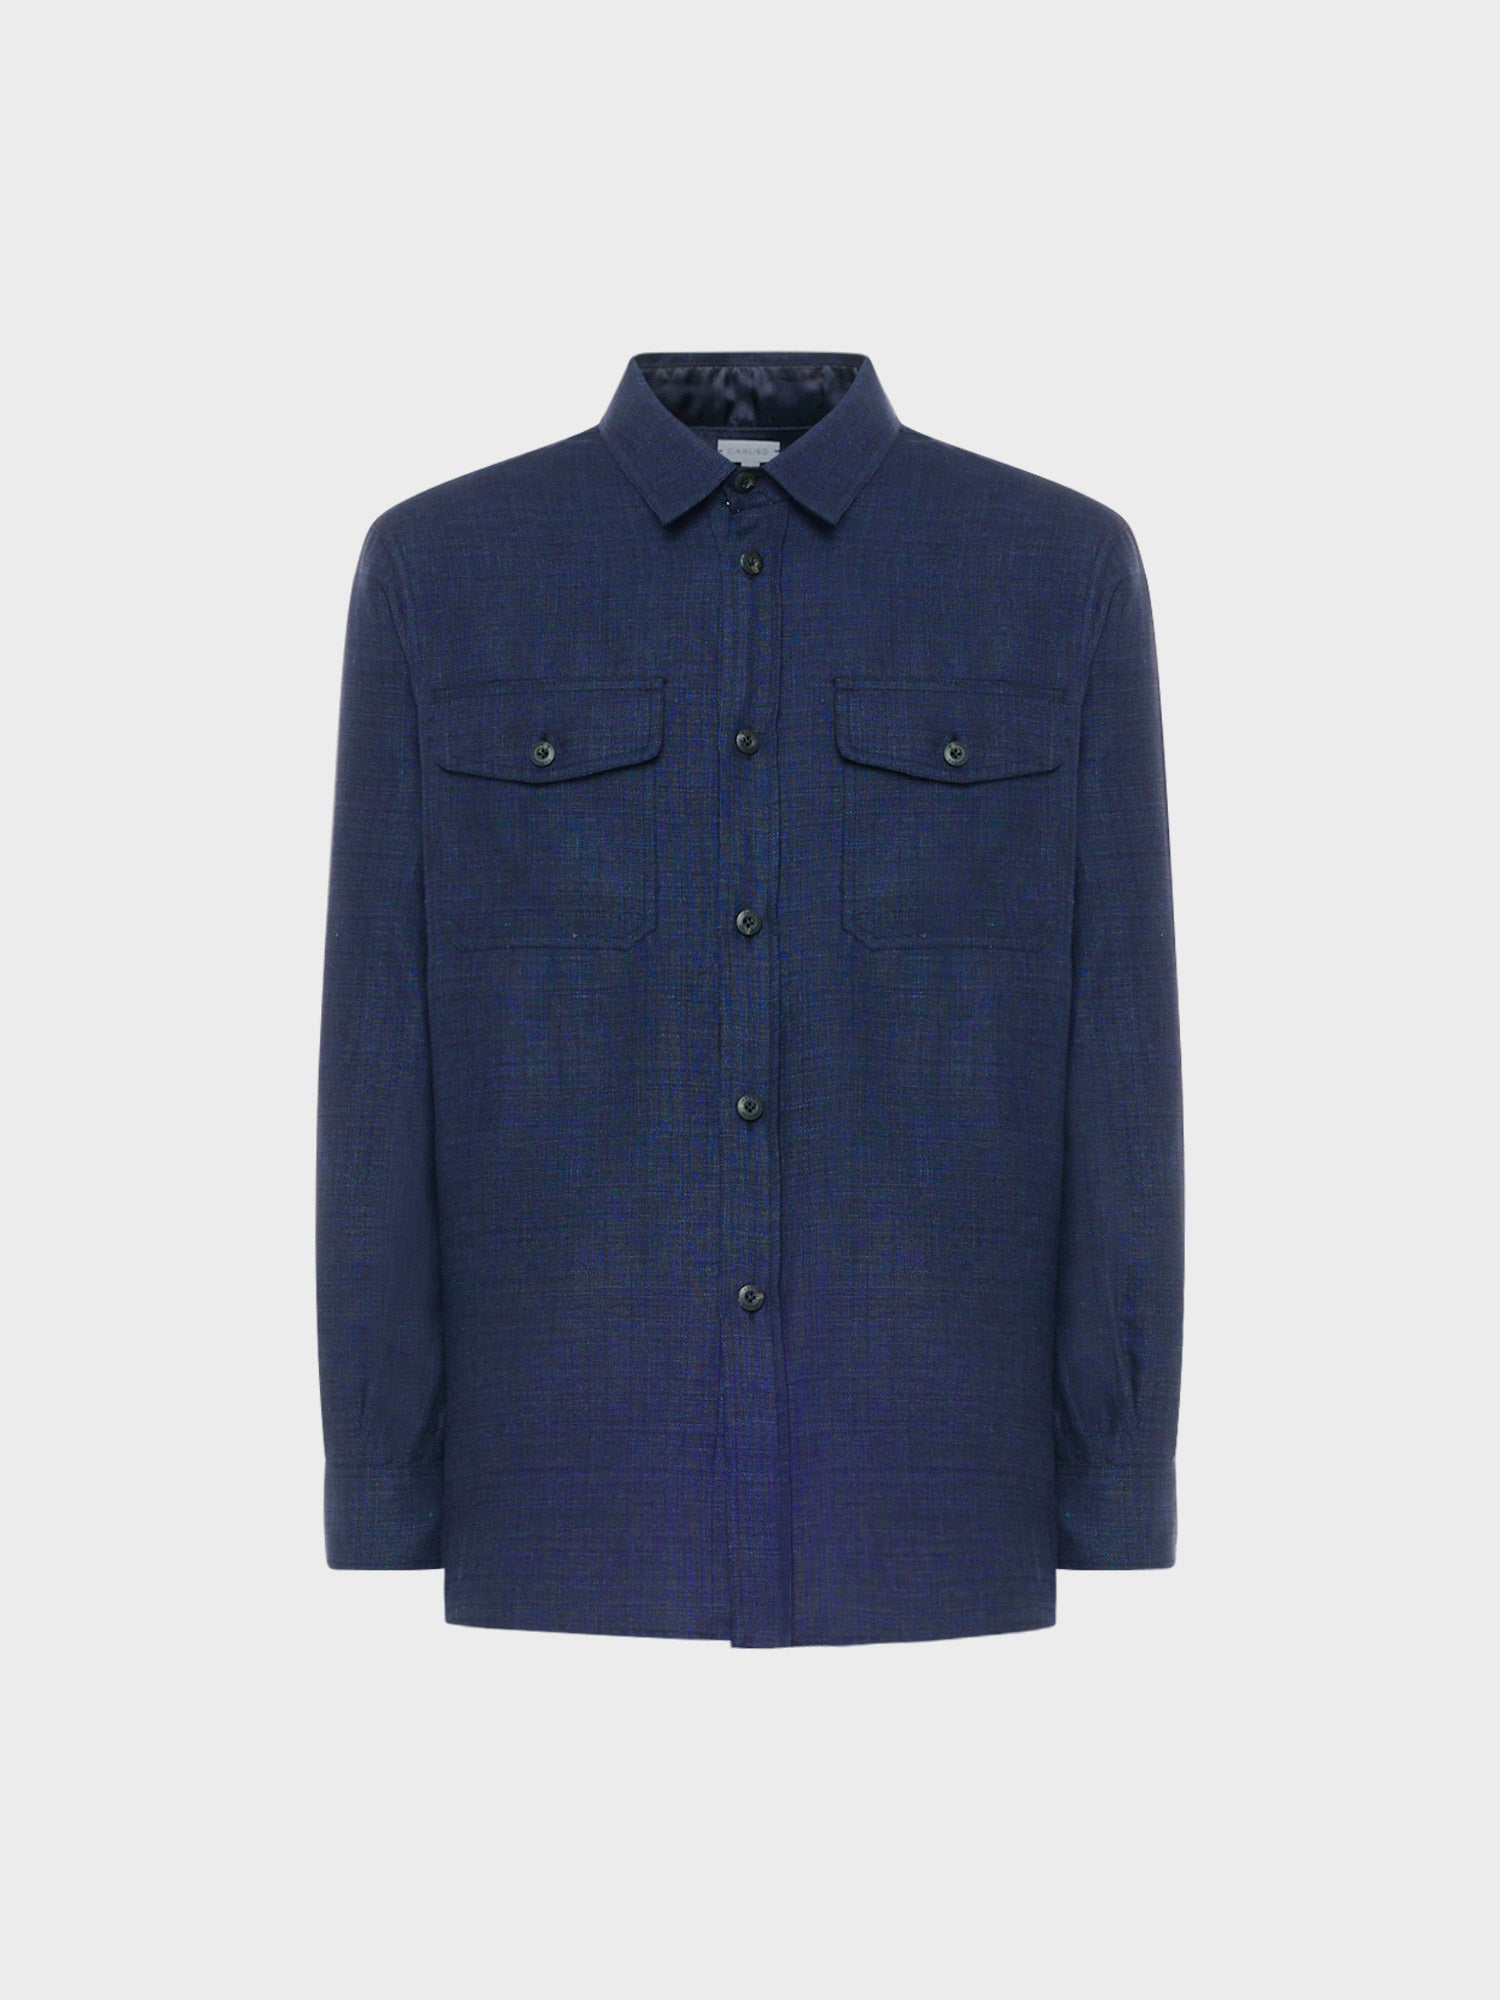 Caruso menswear Abbigliamento Uomo Overshirt estiva in lino e lana blu still